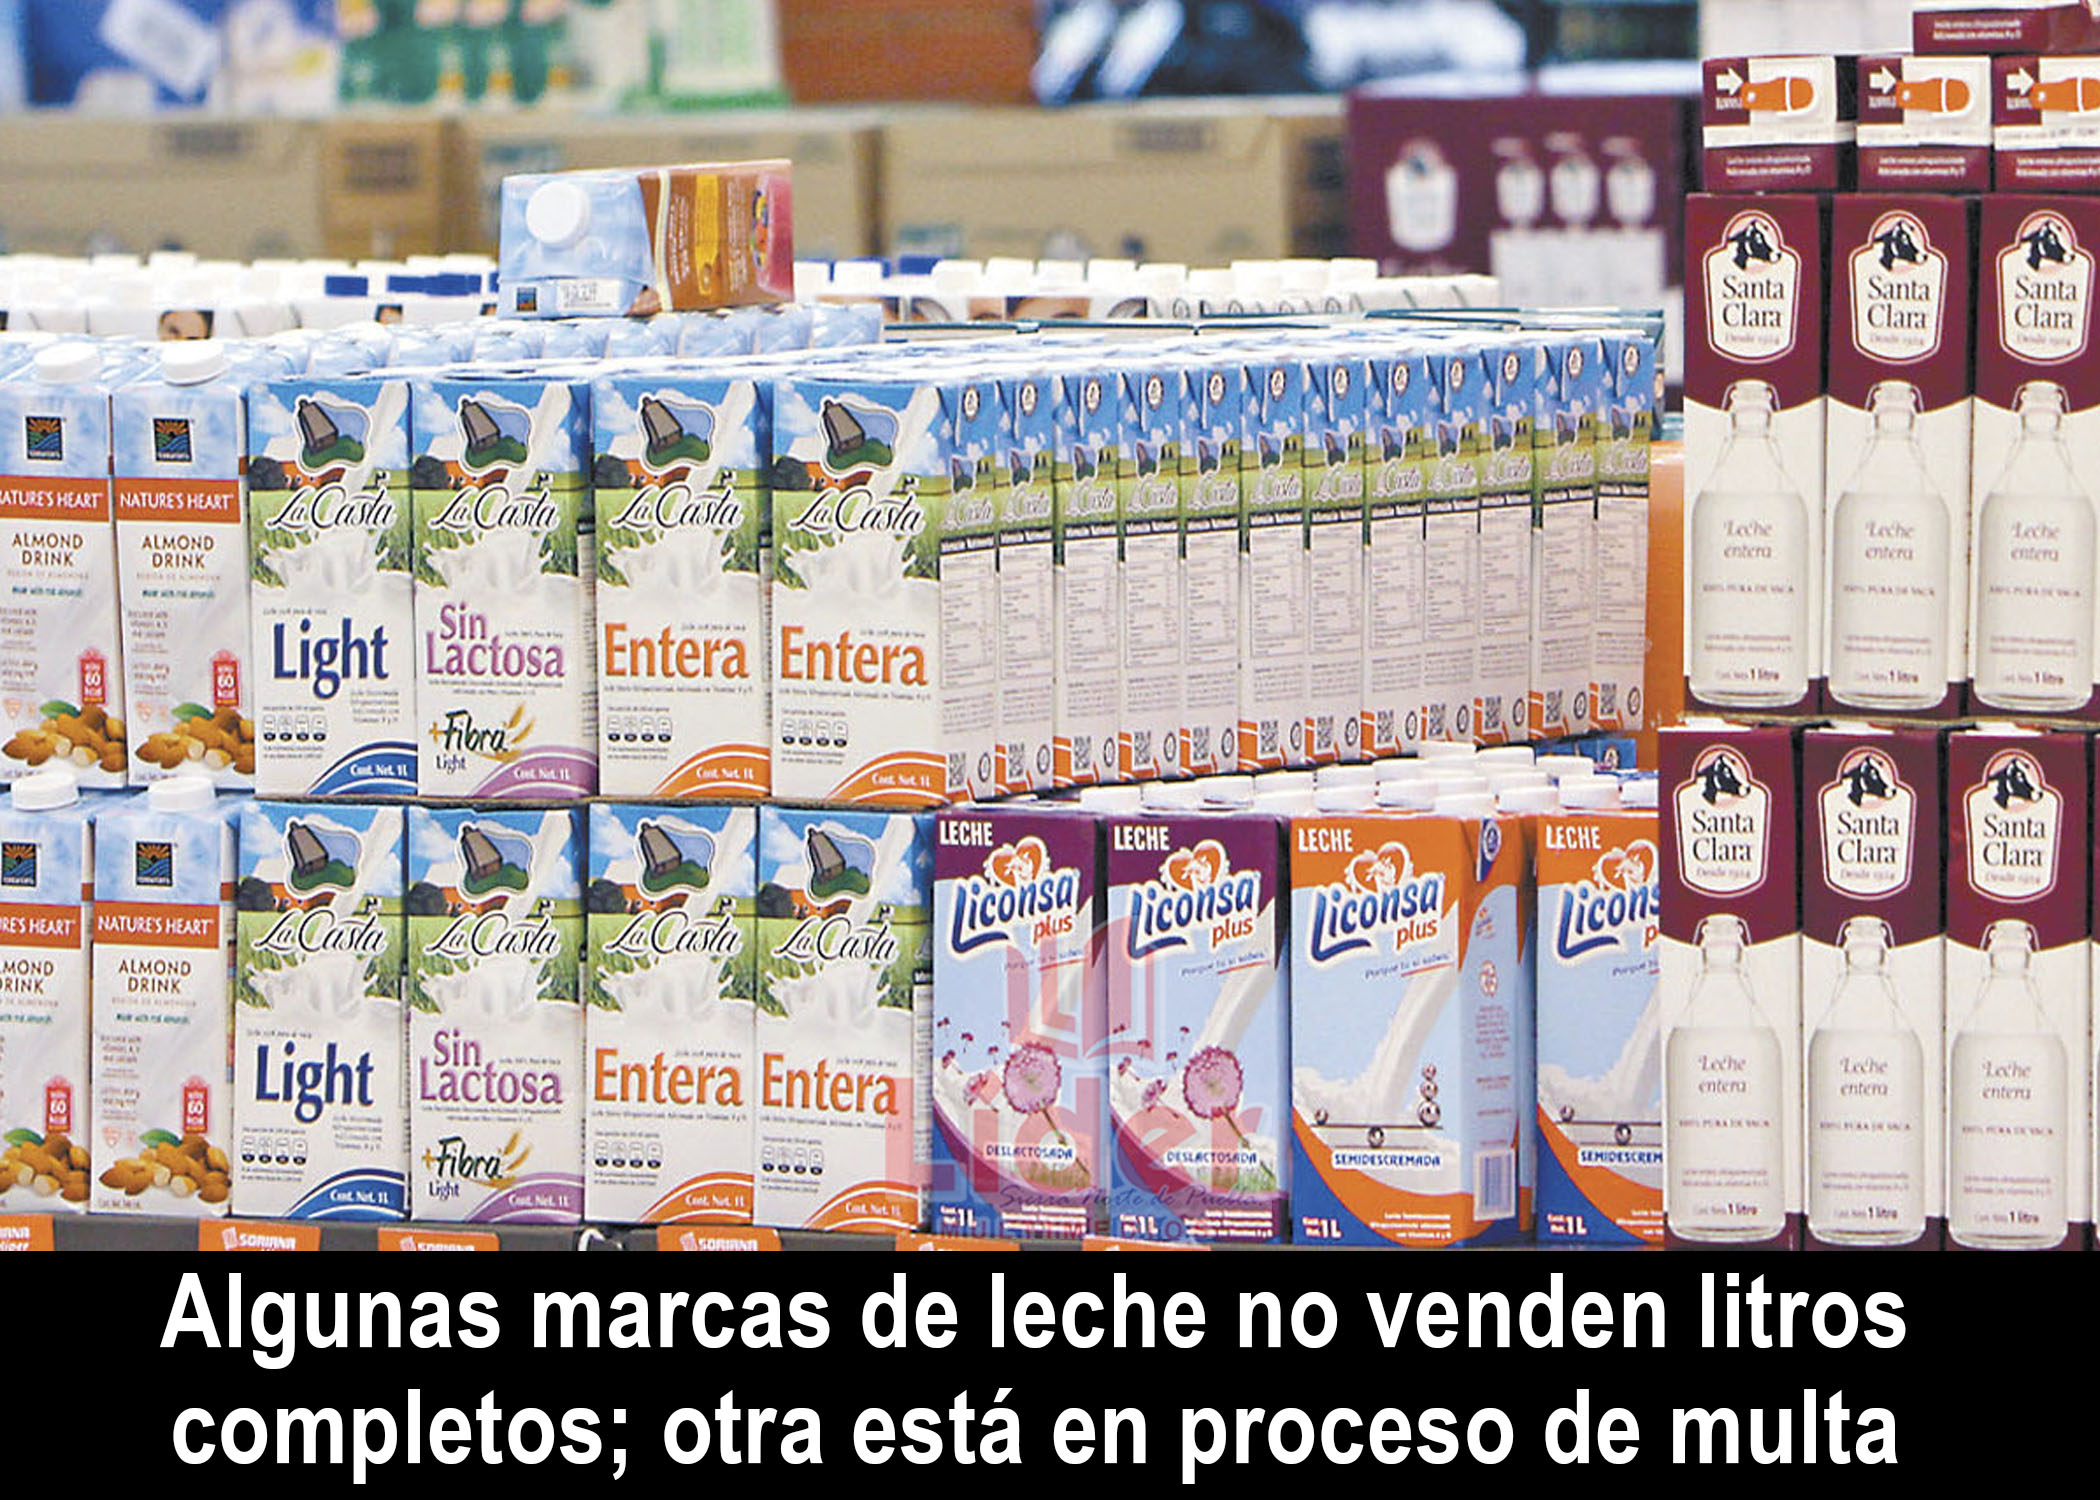 Marcas de leche que dan litros incompletos y las «falsas», de acuerdo a Profeco